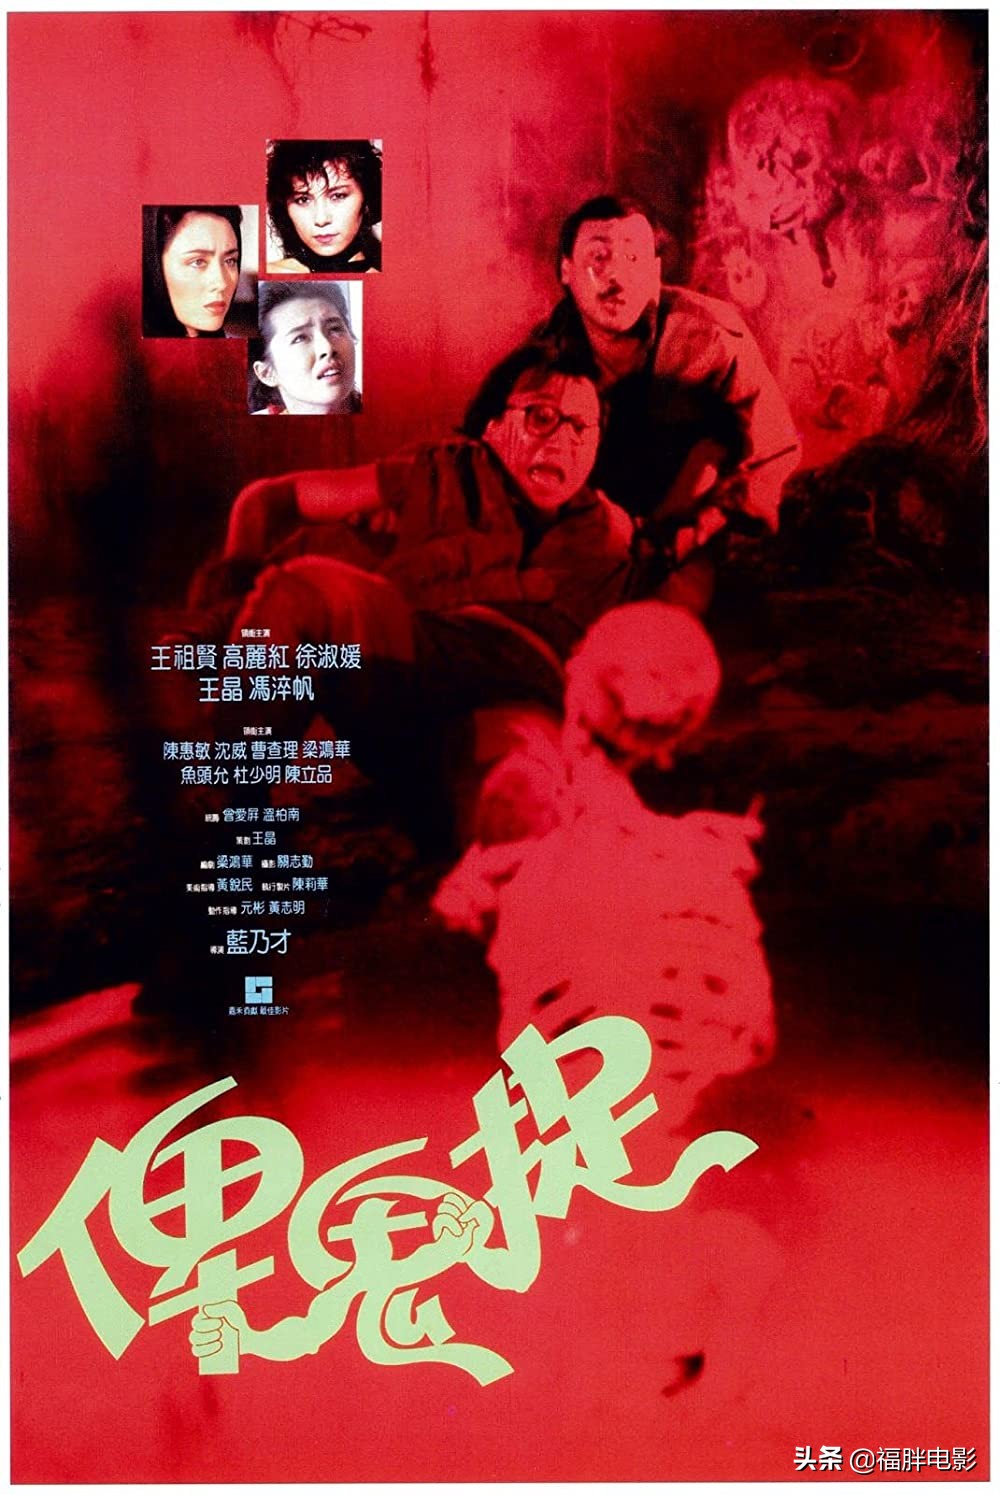 港版海报《俾鬼捉》上映于1986年,导演蓝乃才,编剧梁鸿华,策划王晶